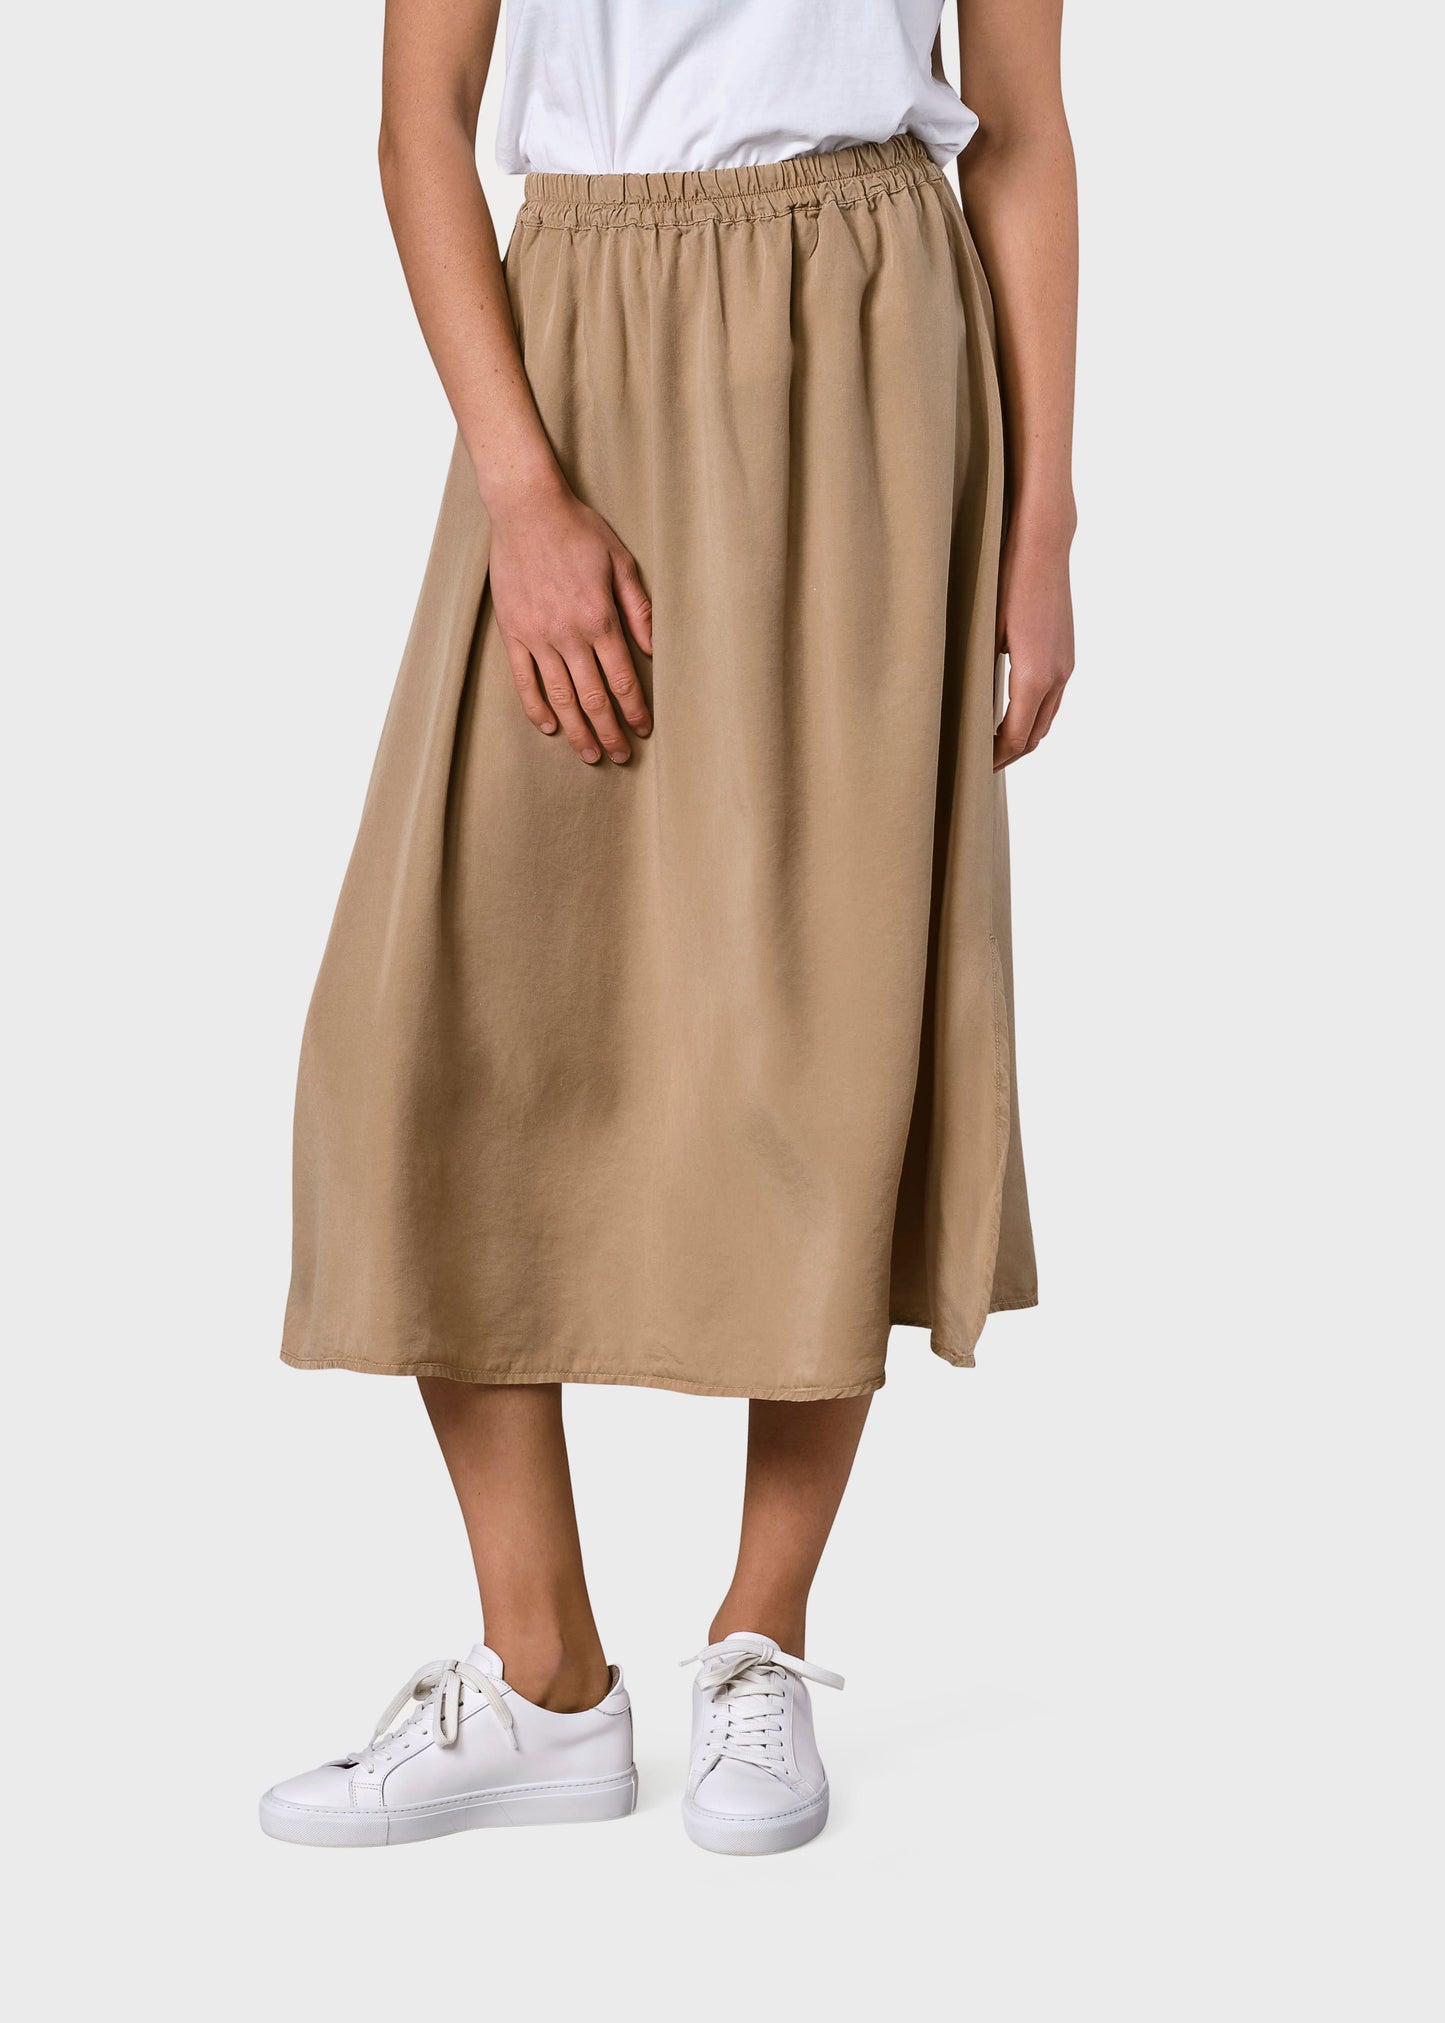 Ramona skirt